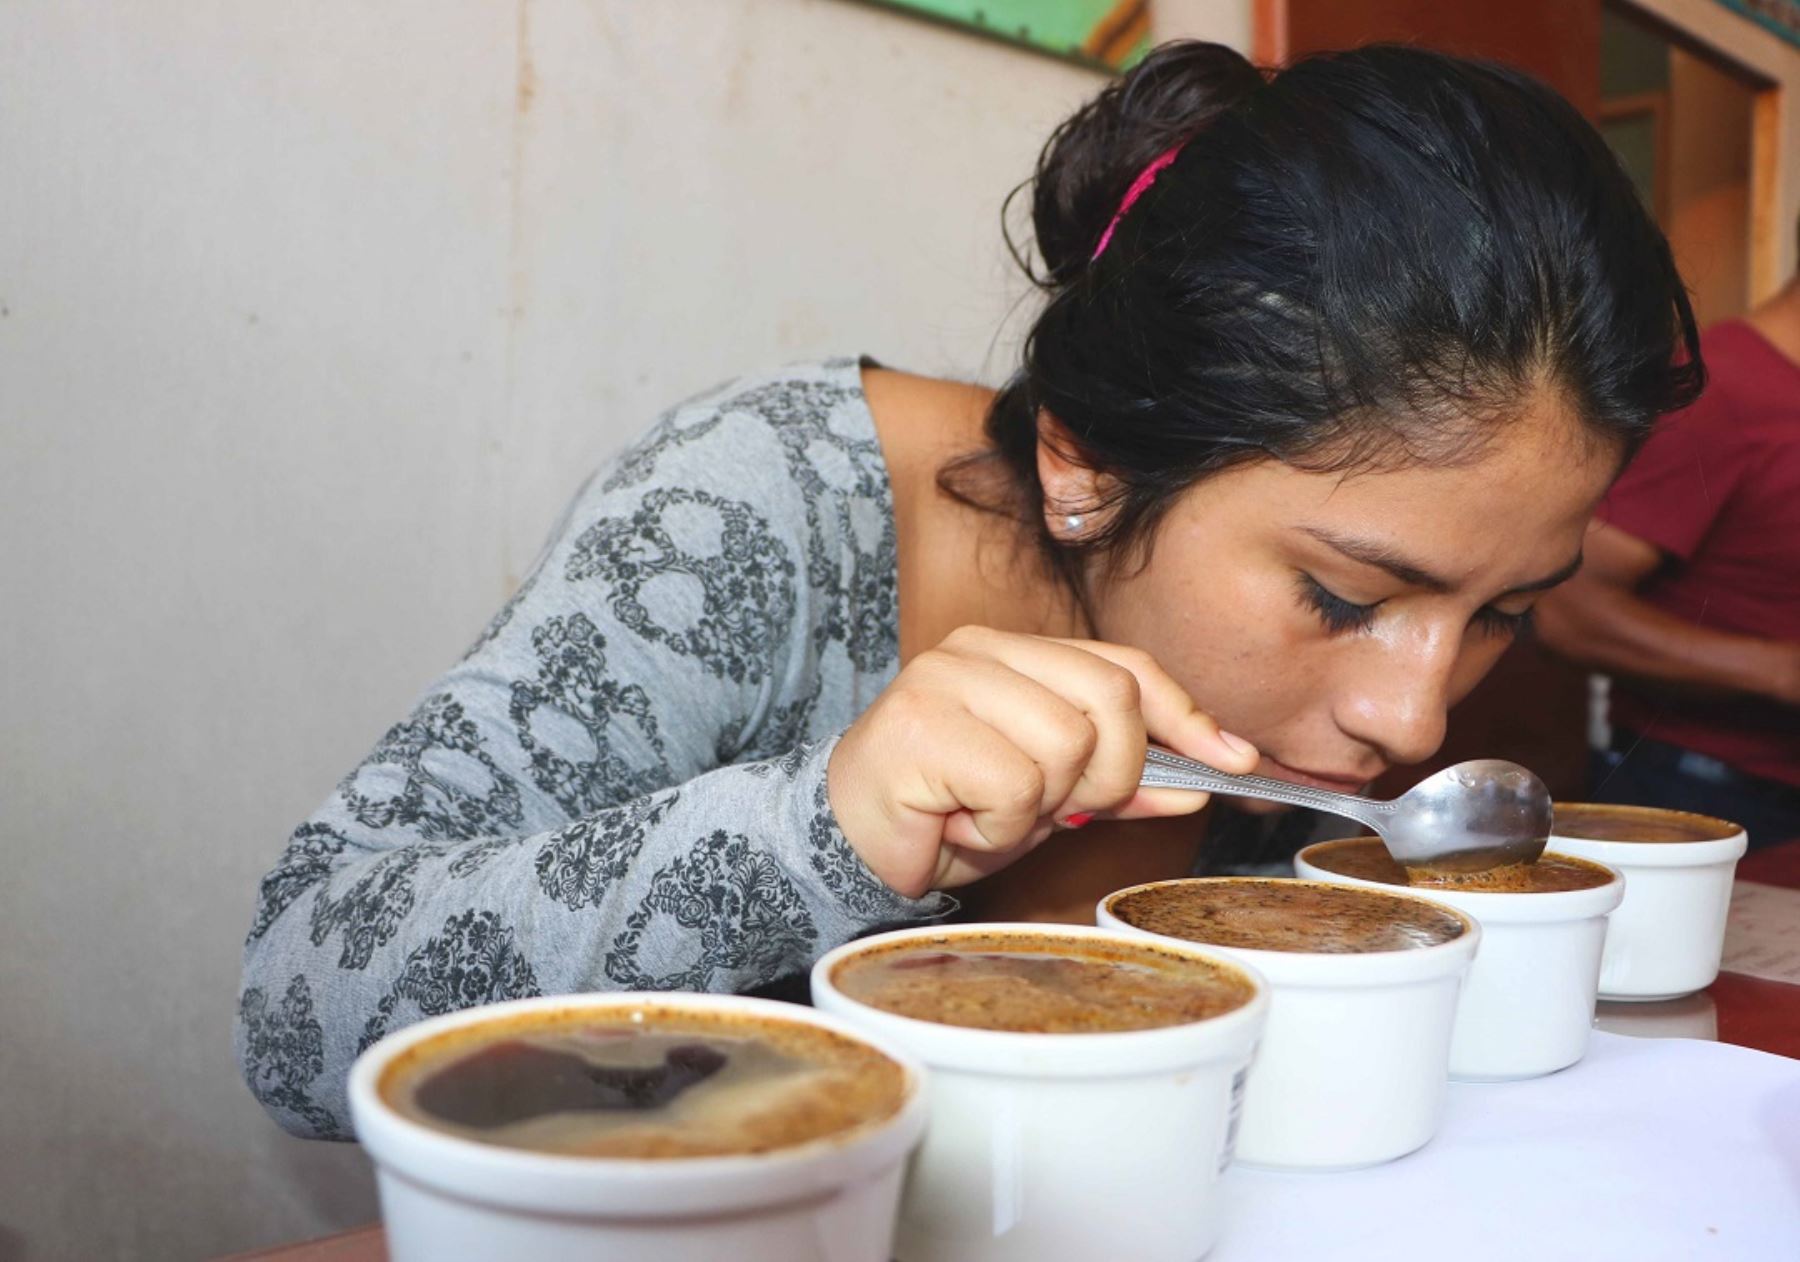 Capacitación para socios de organizaciones de productores cafetaleros de Mazamari, Pangoa y Río Tambo, en temas de transformación tecnológica del café, culminó con éxito en la ciudad de Satipo gracias al Programa de Desarrollo Alternativo en Satipo.